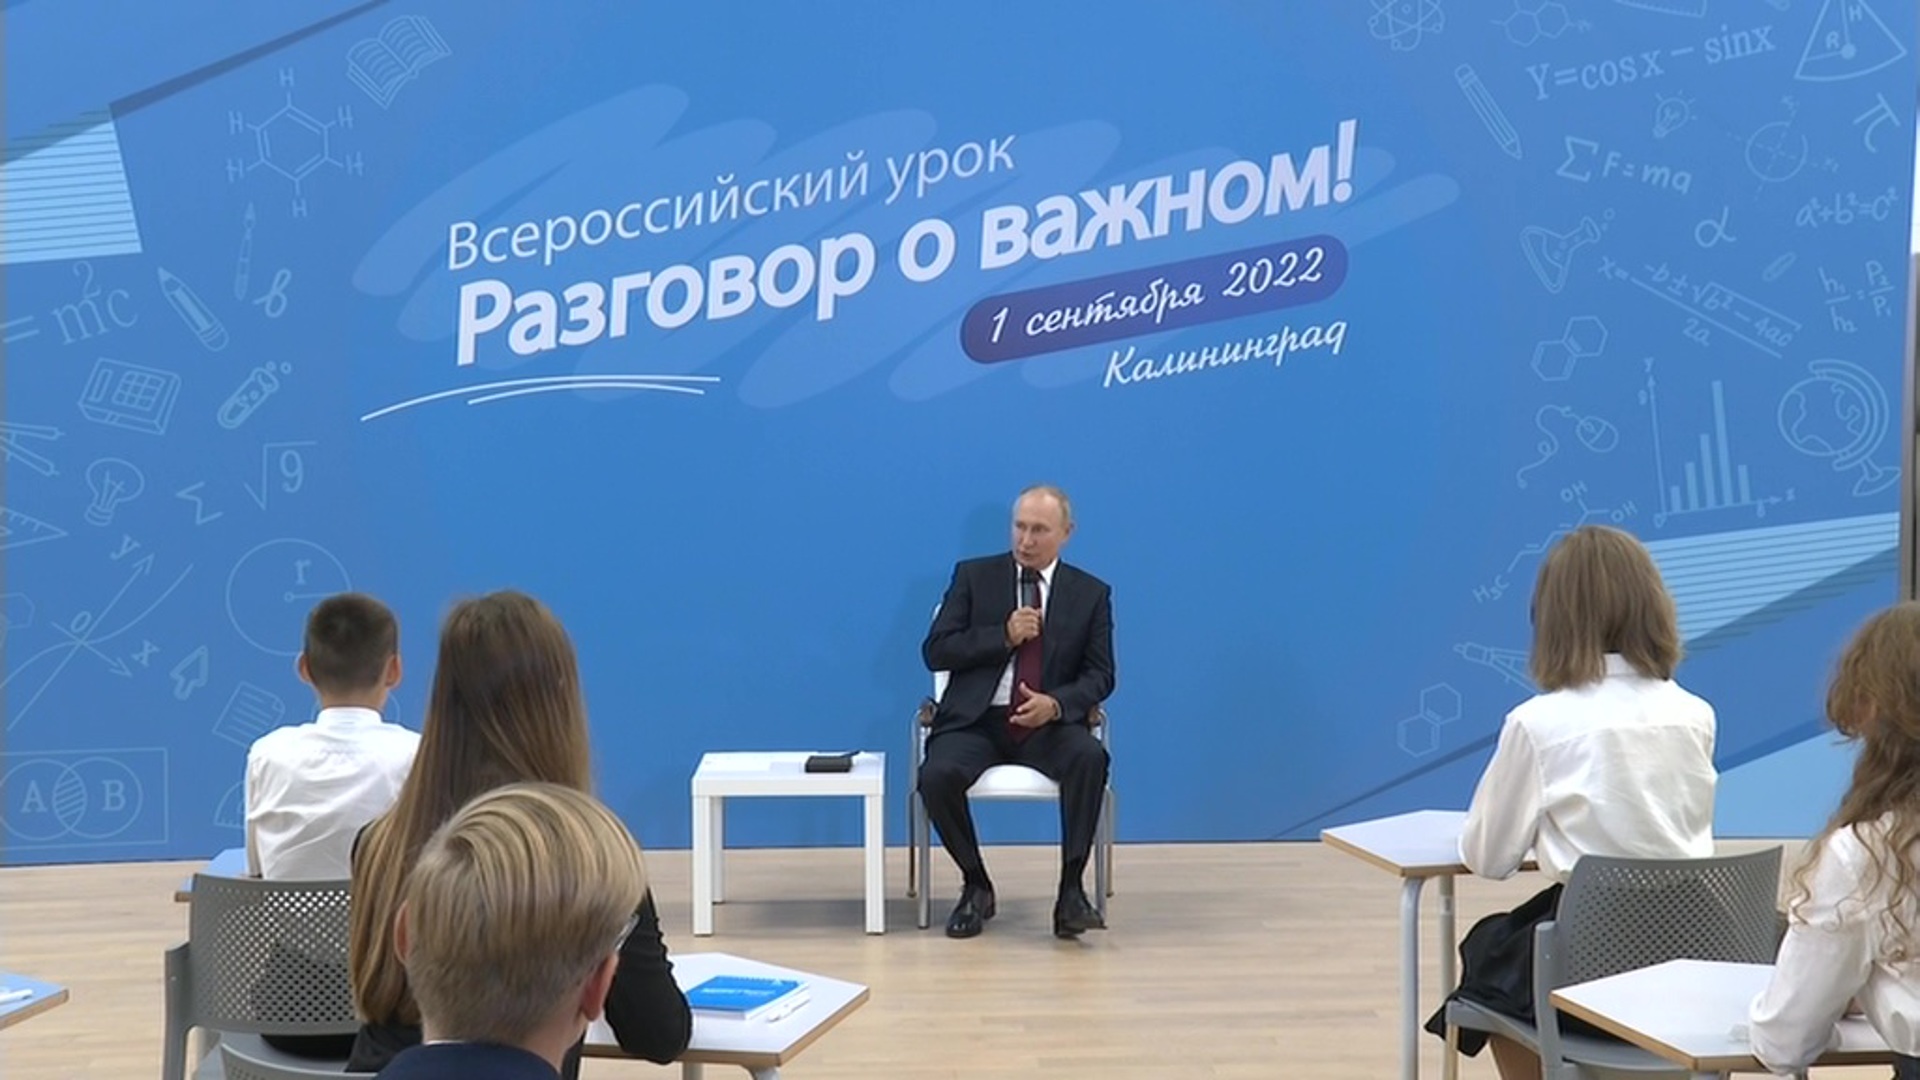 Время покажет 02.04 2024. Открытый урок разговоры о важном с Владимиром Путиным. Разговор о важном с президентом 1 сентября 2022. Разговоры о важном.